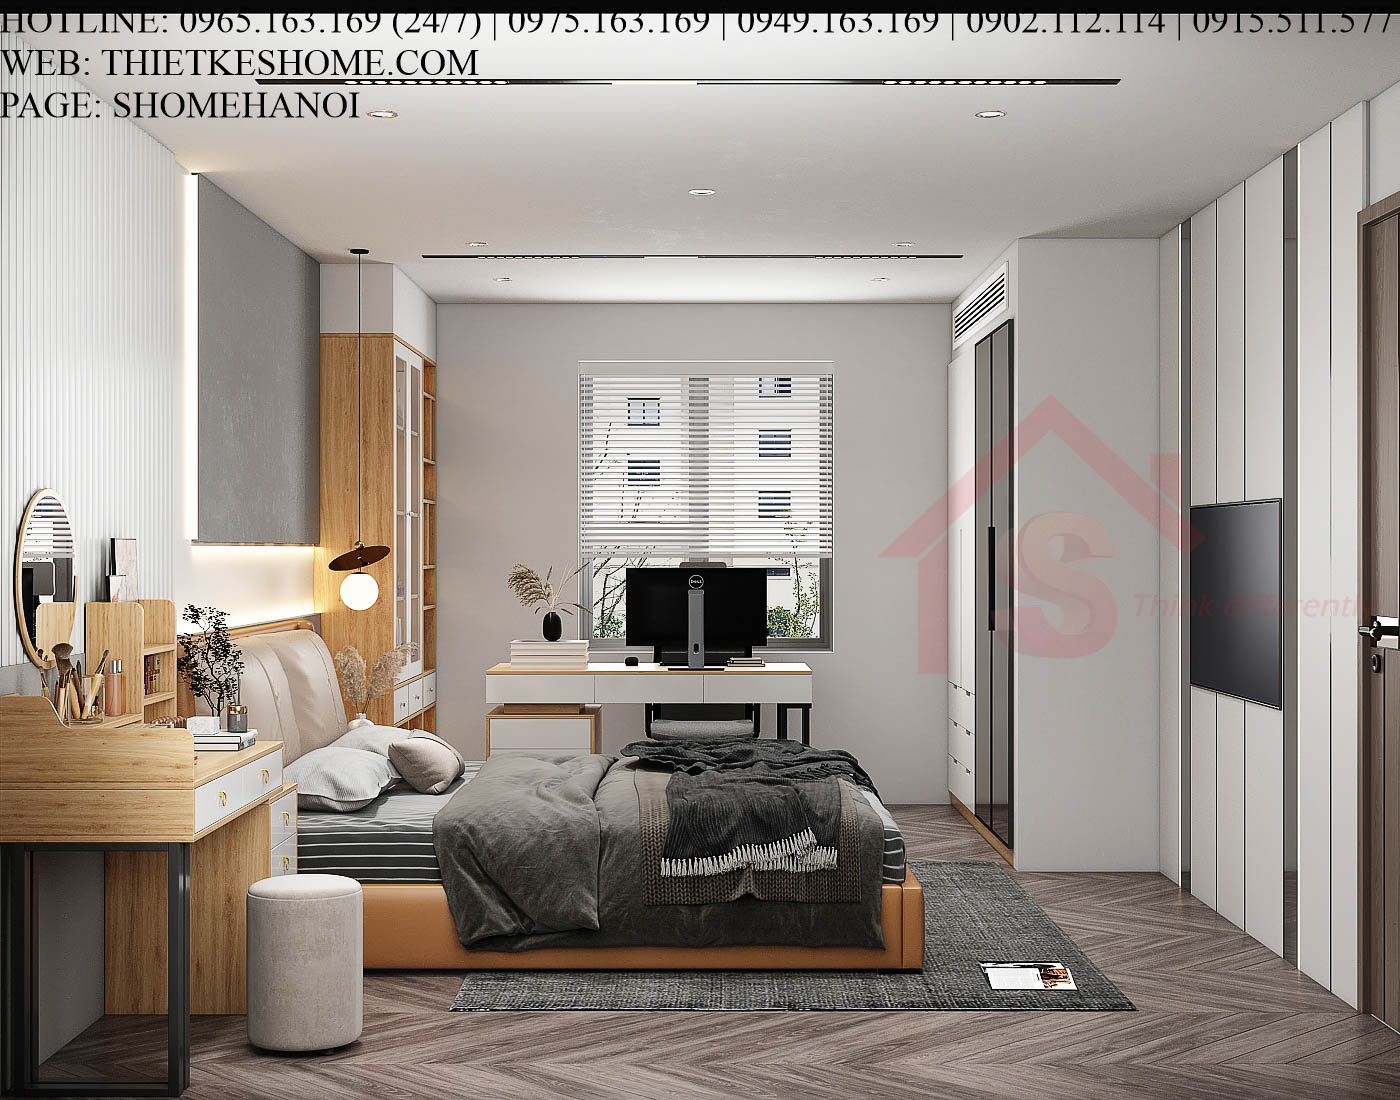 S HOME Combo mẫu nội thất phòng ngủ đẹp hiện đại tiện dụng SHOME6820